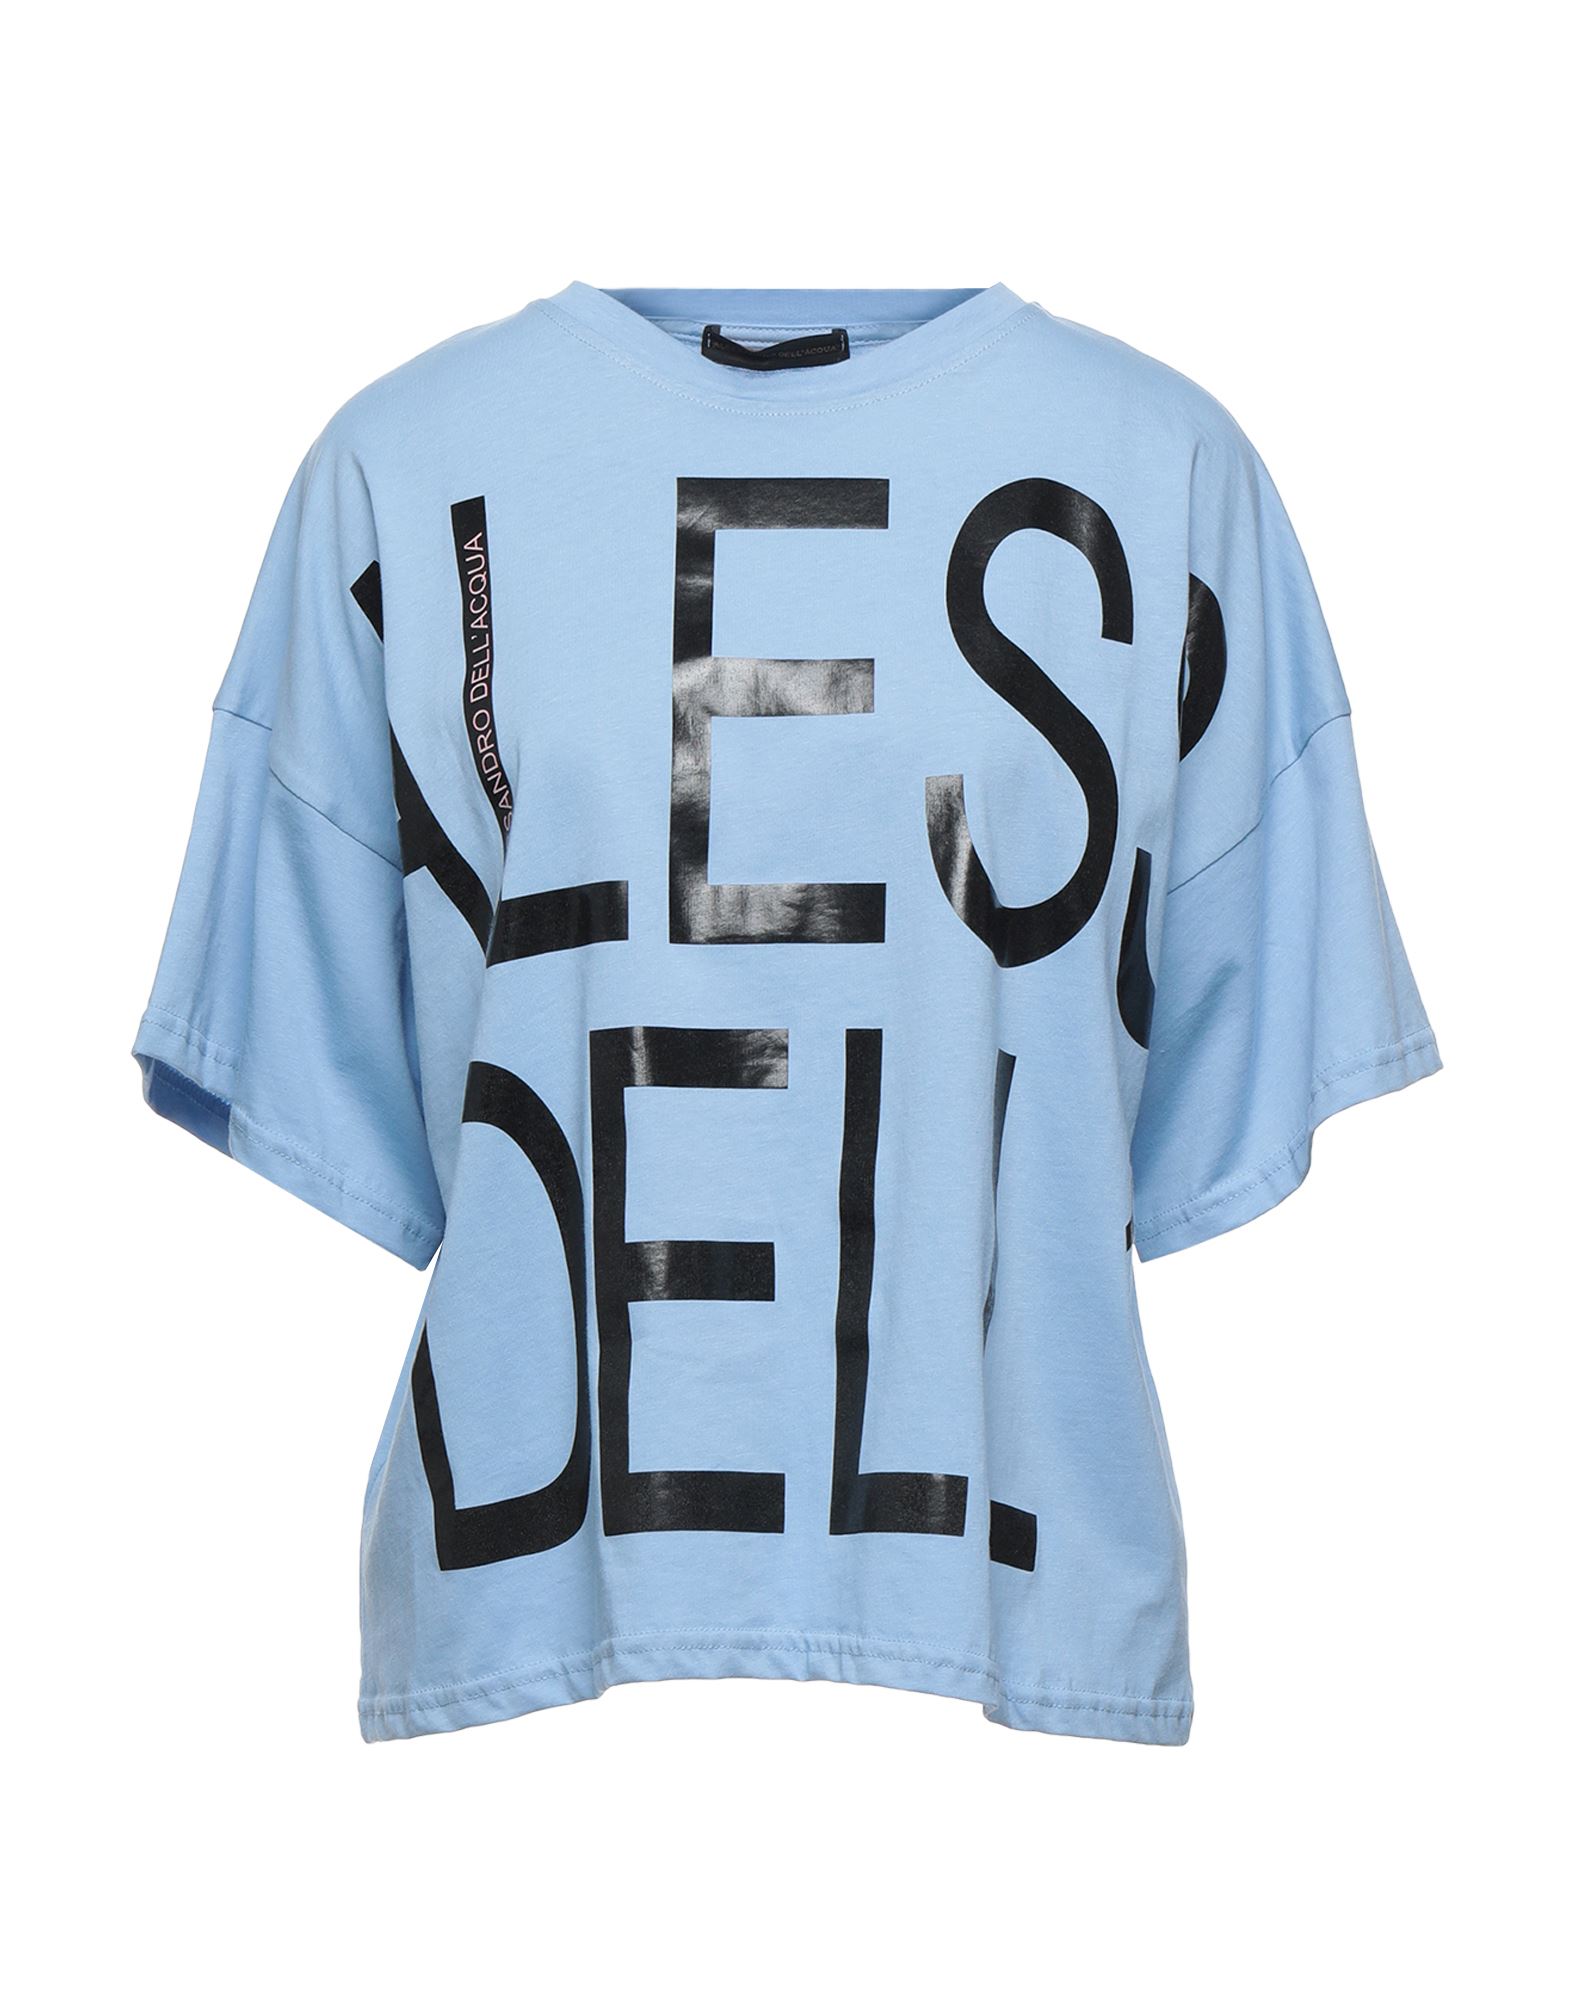 Alessandro Dell'acqua T-shirts In Sky Blue